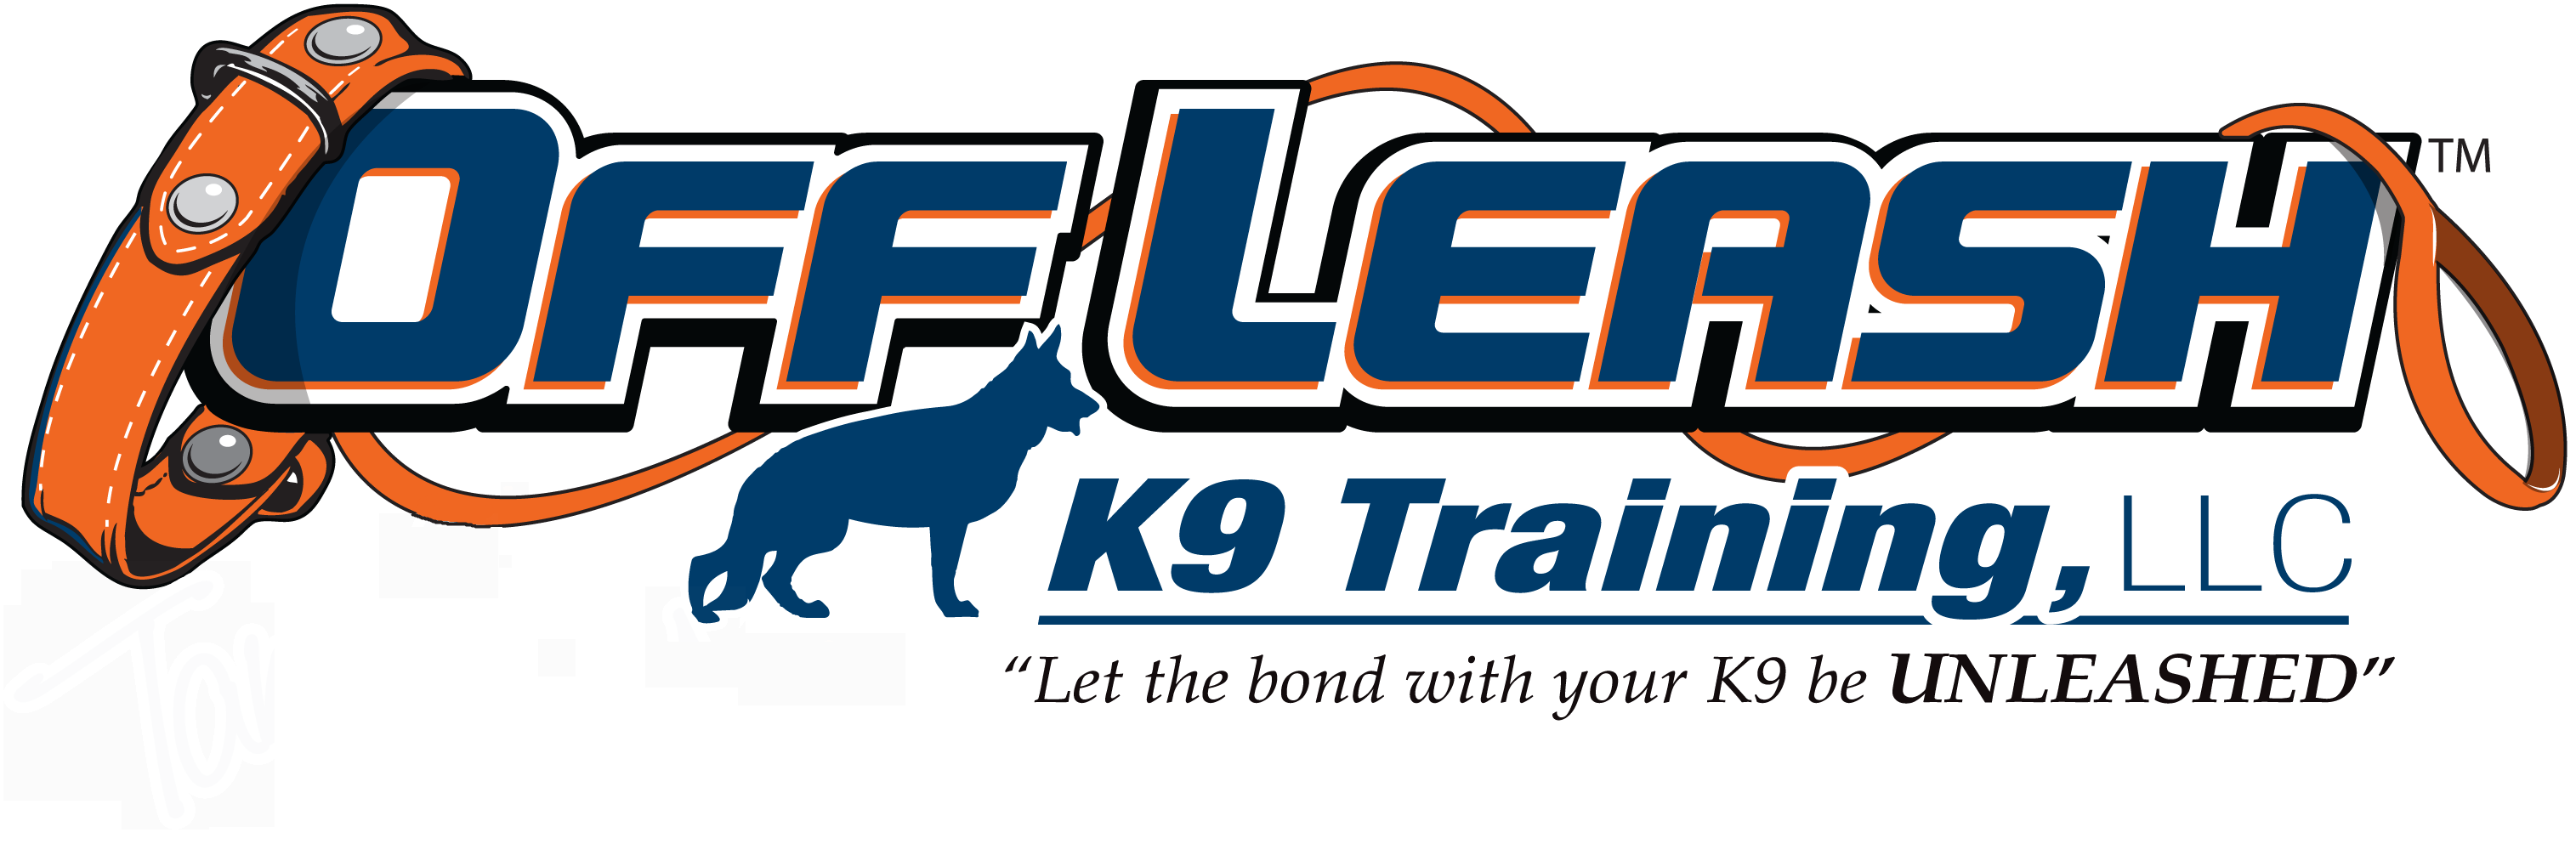 Offleash K9 Dog Training